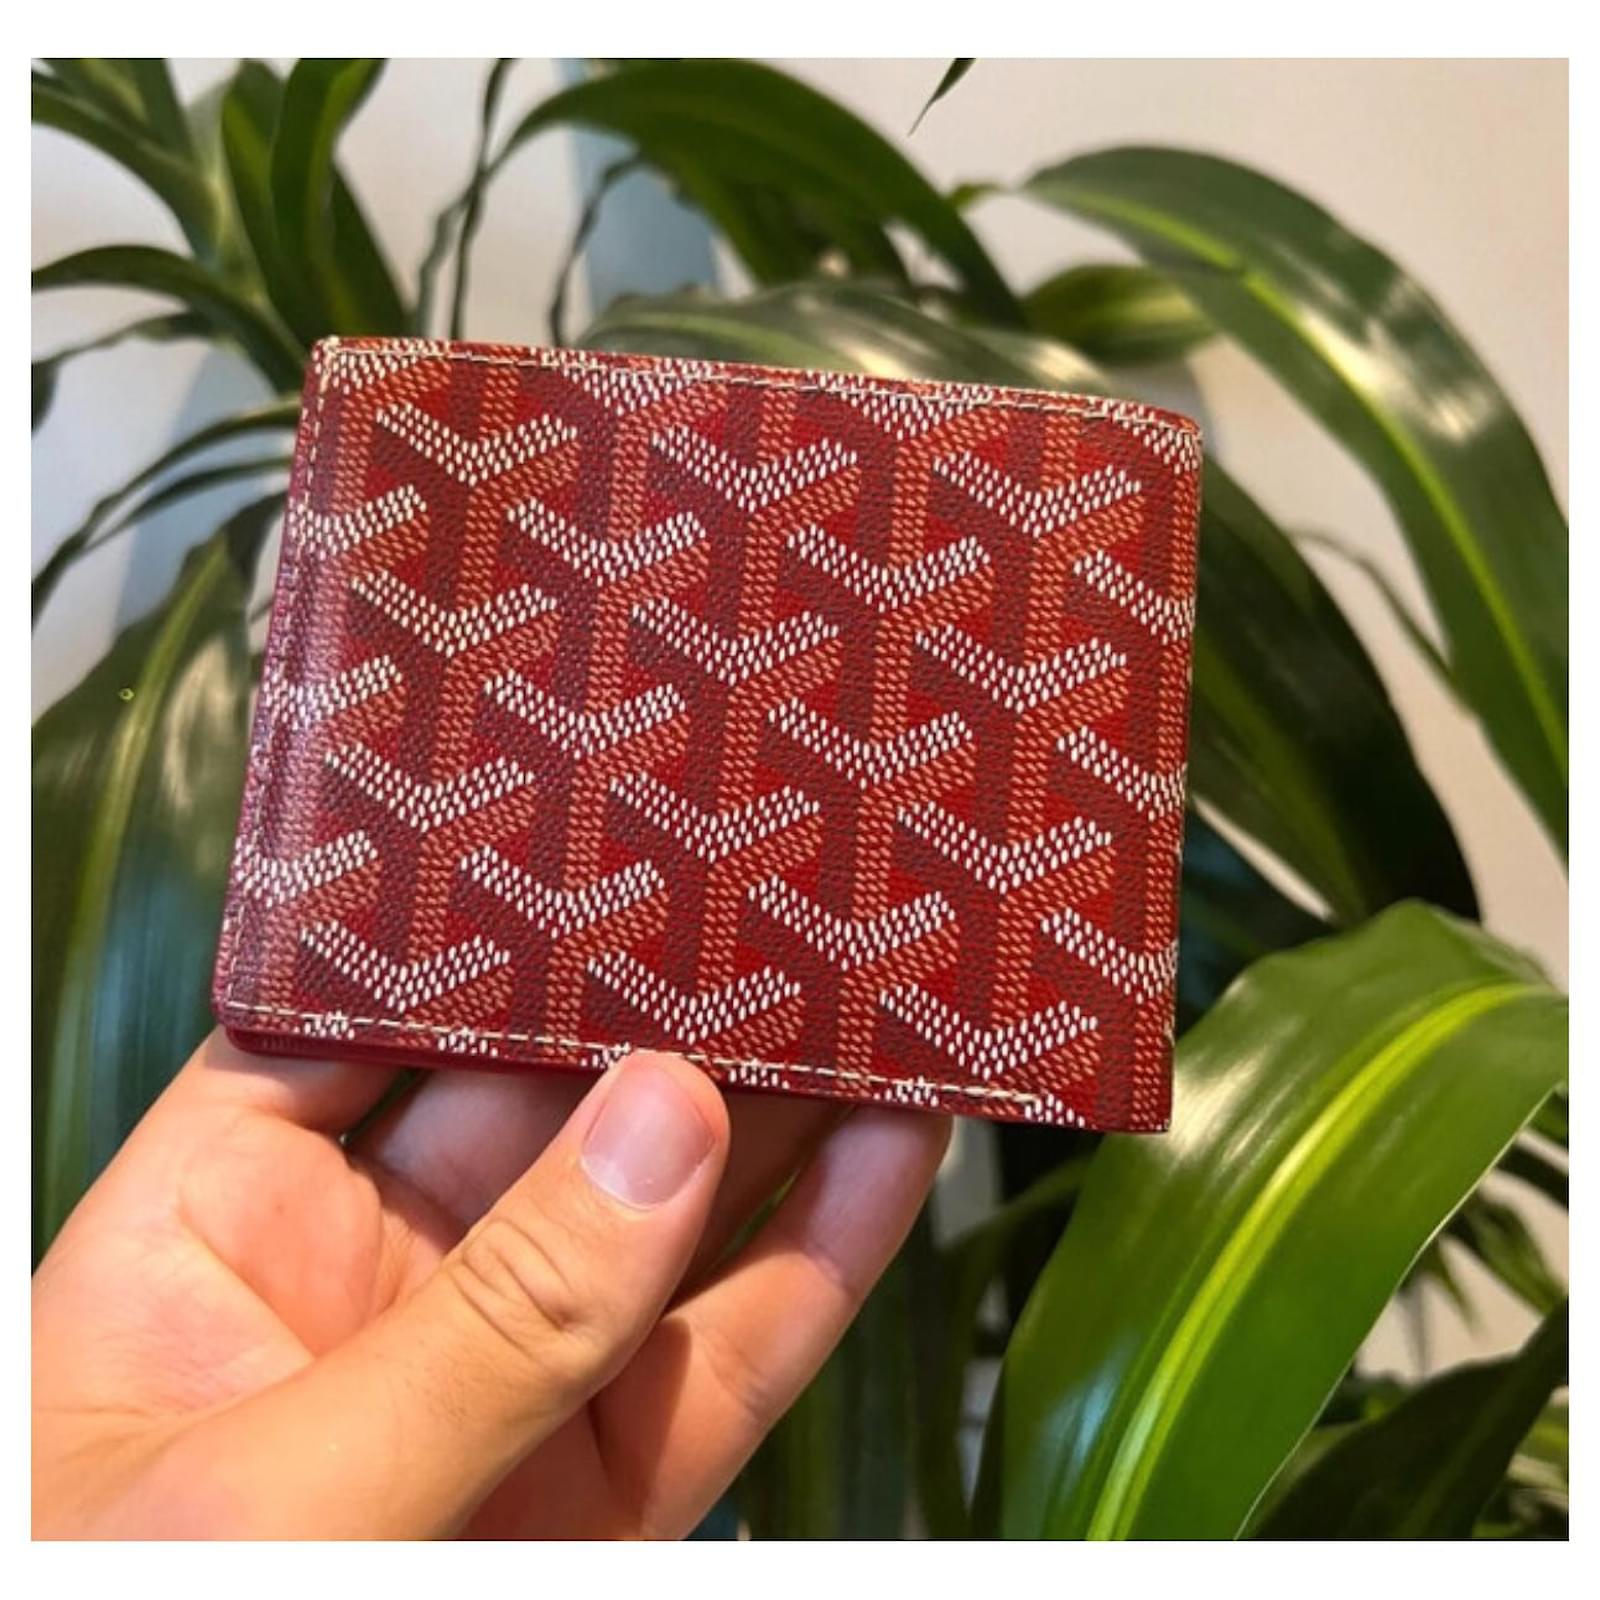 Matignon leather wallet